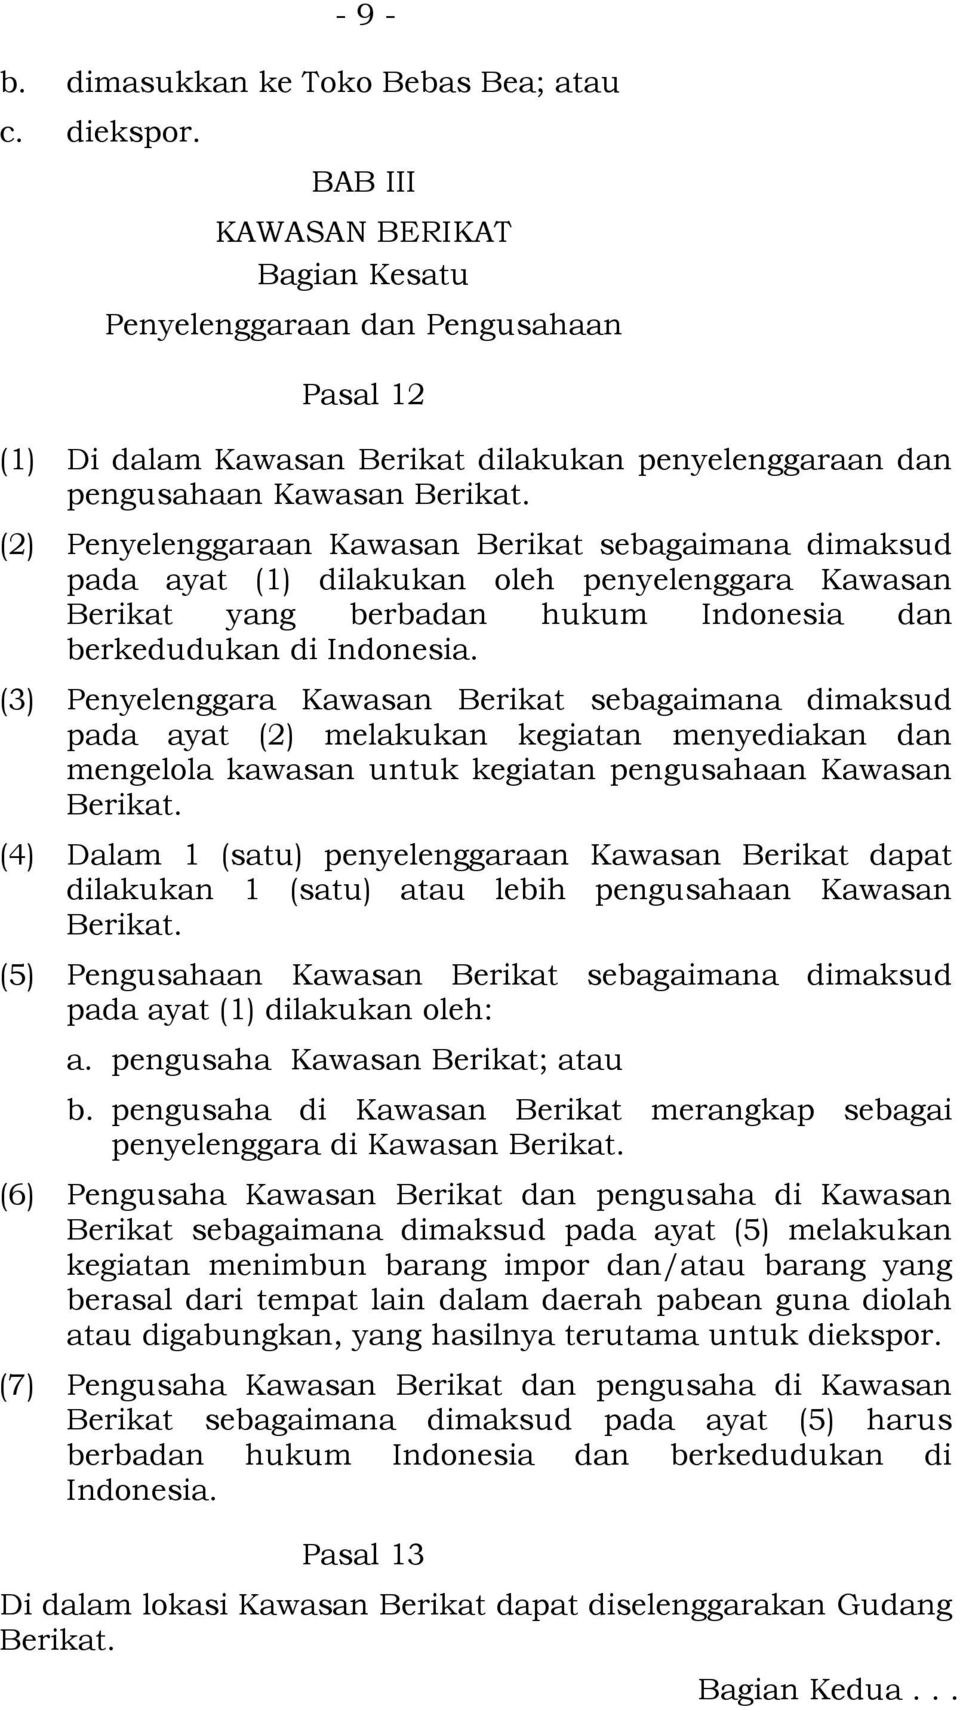 (2) Penyelenggaraan Kawasan Berikat sebagaimana dimaksud pada ayat (1) dilakukan oleh penyelenggara Kawasan Berikat yang berbadan hukum Indonesia dan berkedudukan di Indonesia.